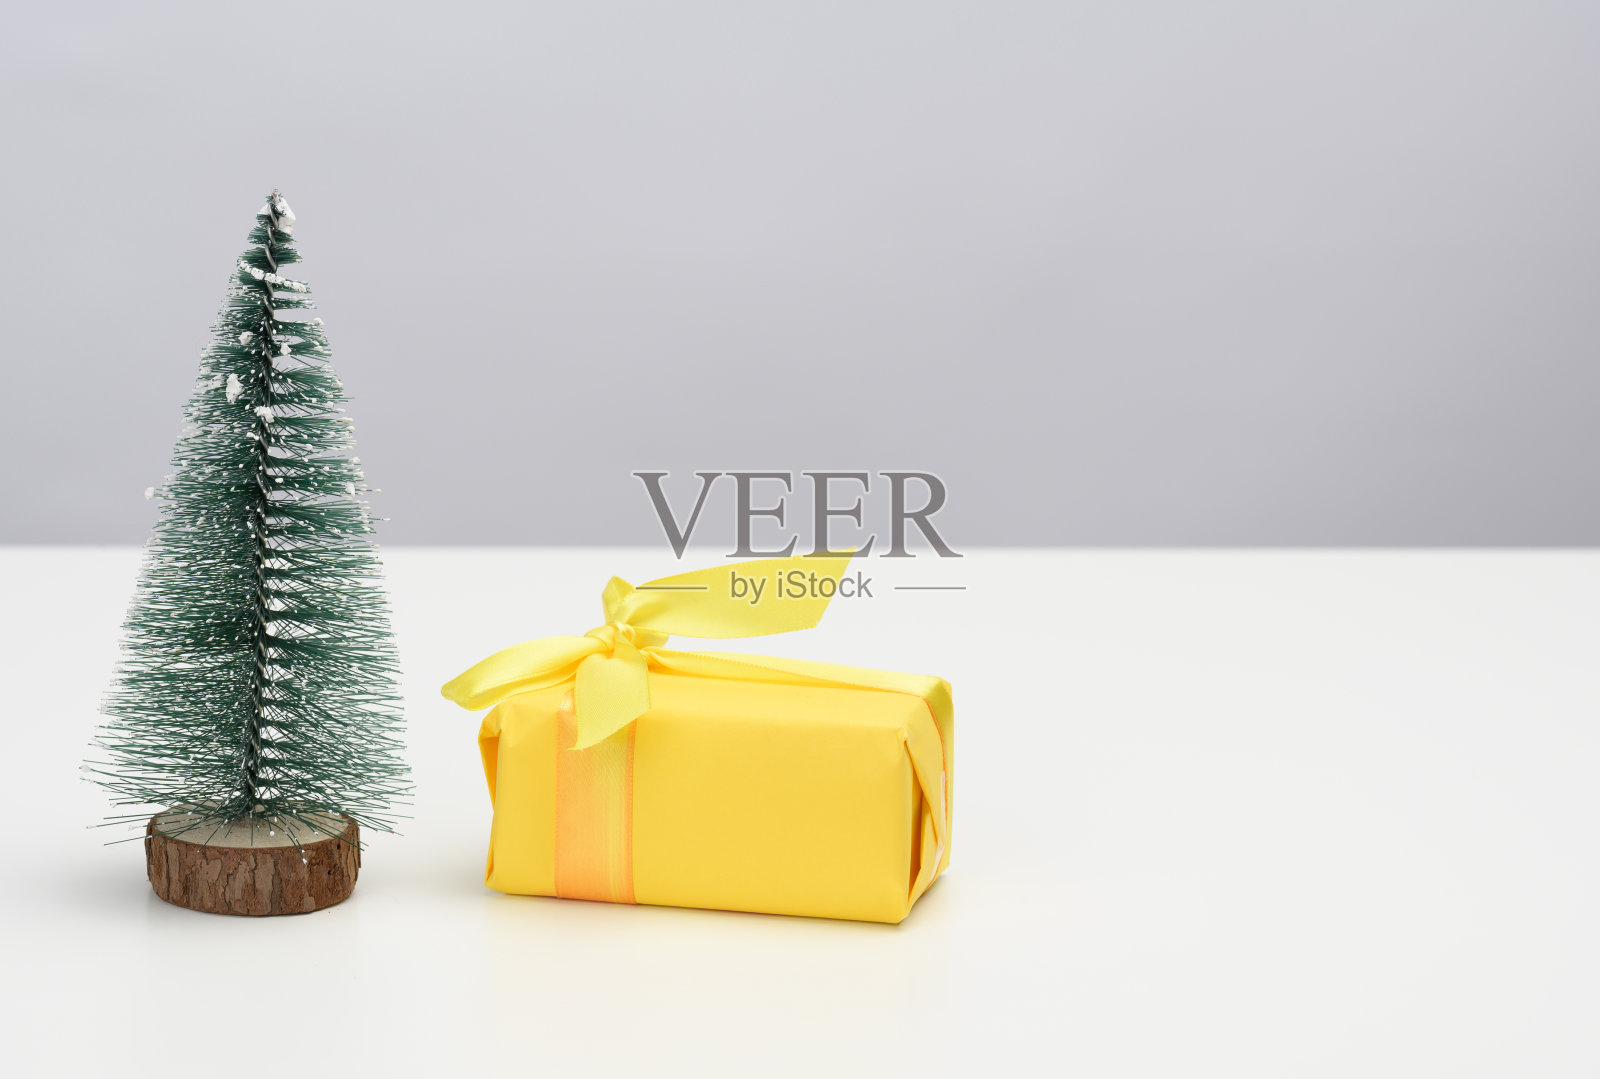 盒子用黄色的纸包裹着，白色的桌子上有一棵装饰性的圣诞树。节日的背景照片摄影图片